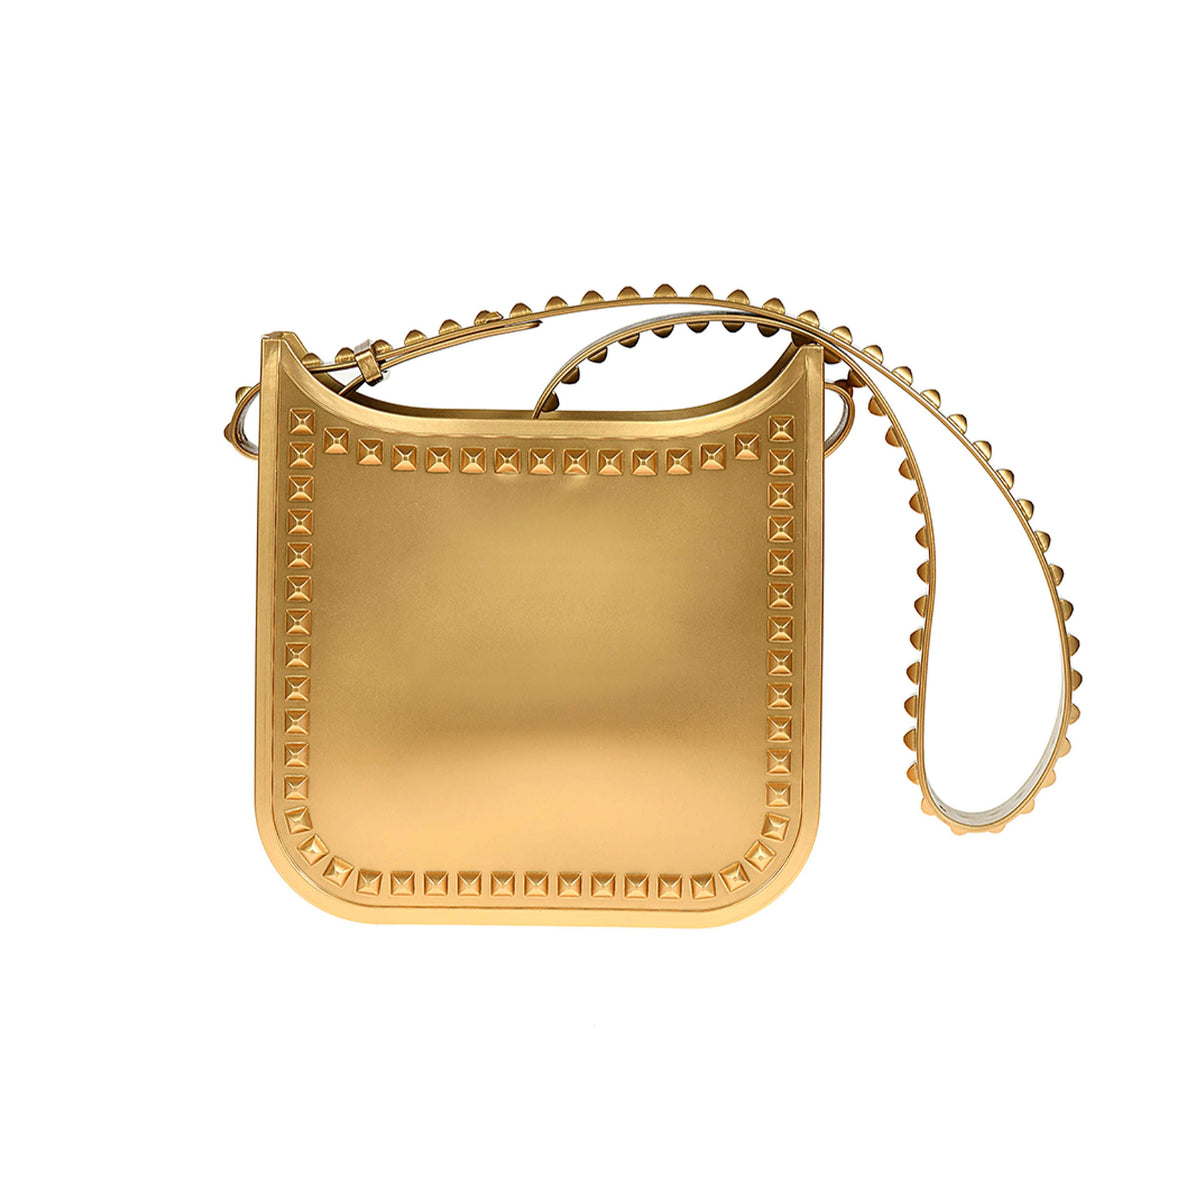 Handsfree Toni beach purse in color gold 